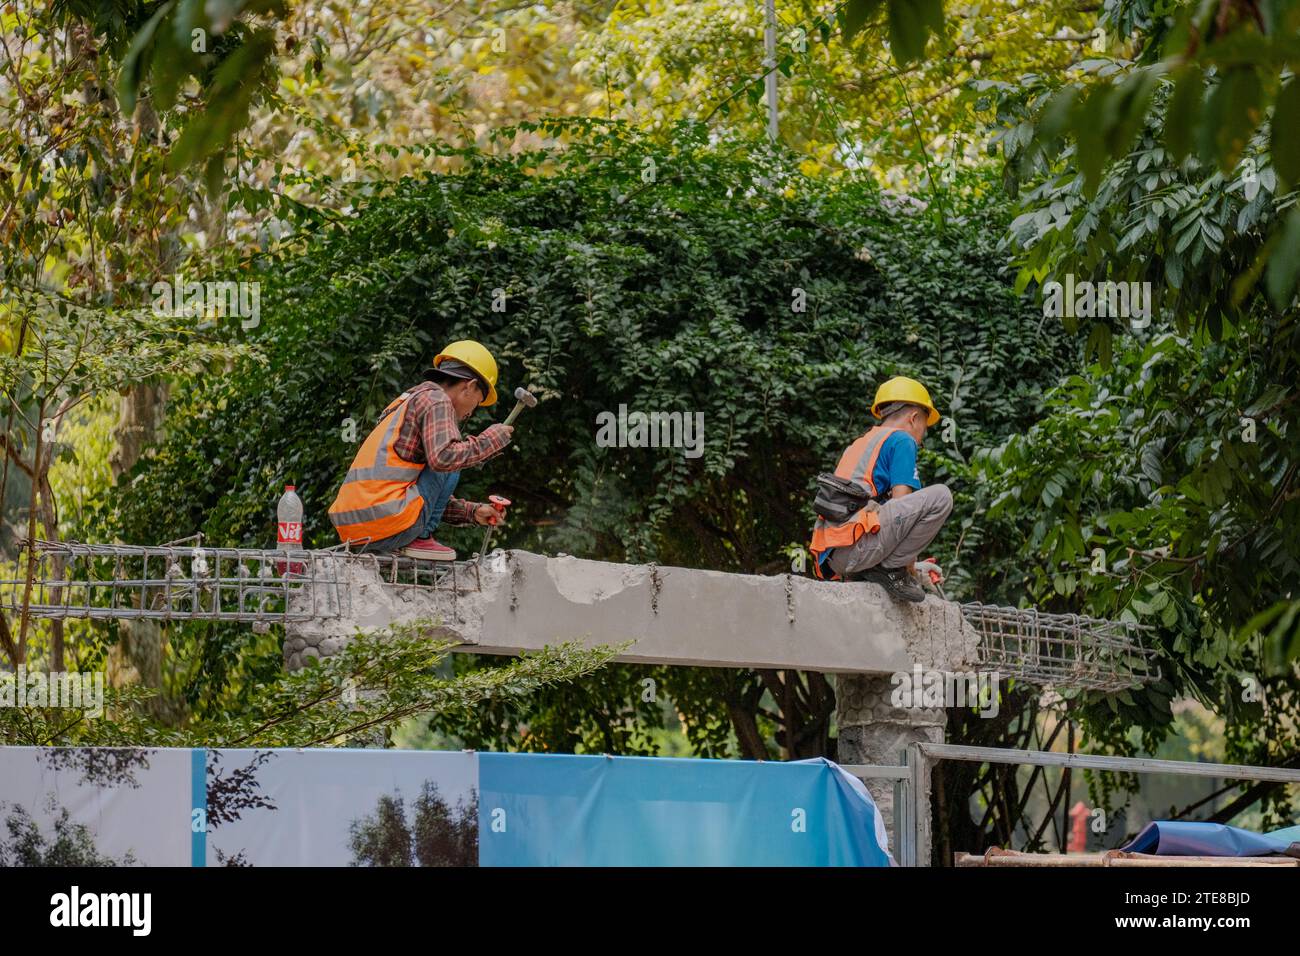 Engagierte indonesische Bauarbeiter auf einem Betonhaufen, die mit Entschlossenheit vor einem Hintergrund von Bäumen hämmern, was Fortschritt und hart symbolisiert Stockfoto